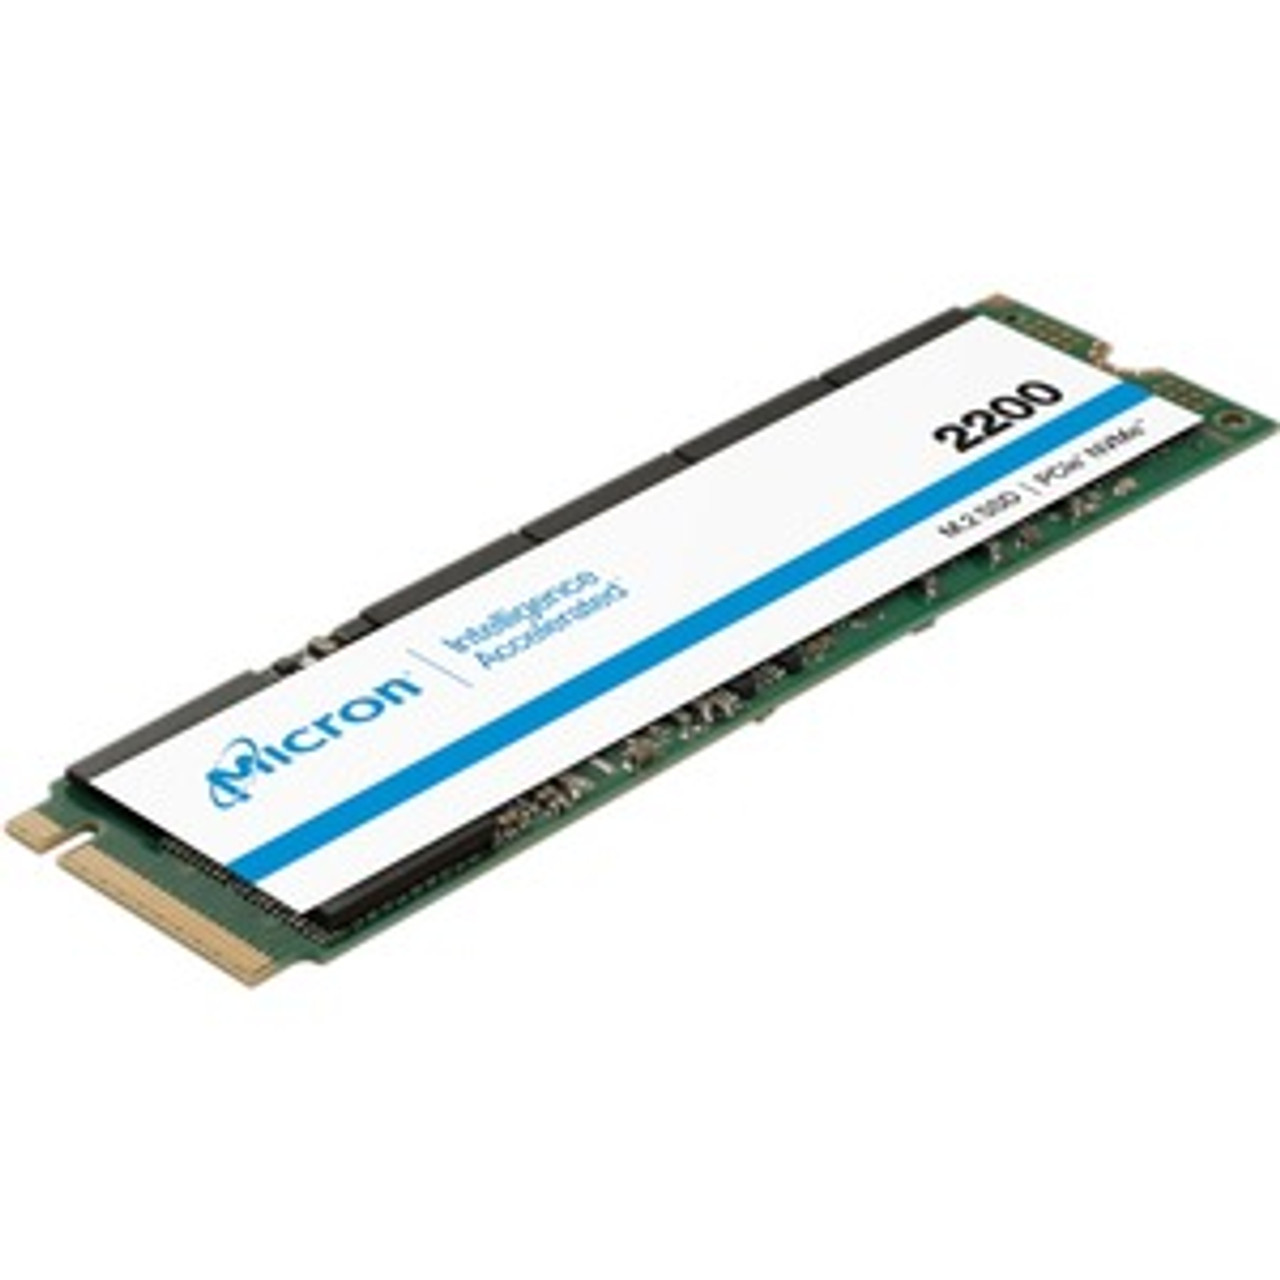 MTFDHBA256TCK-1AS15ABYY Micron 2200 256GB TLC PCI Express 3.0 x4 NVMe M.2 2280 Internal Solid State Drive (SSD)